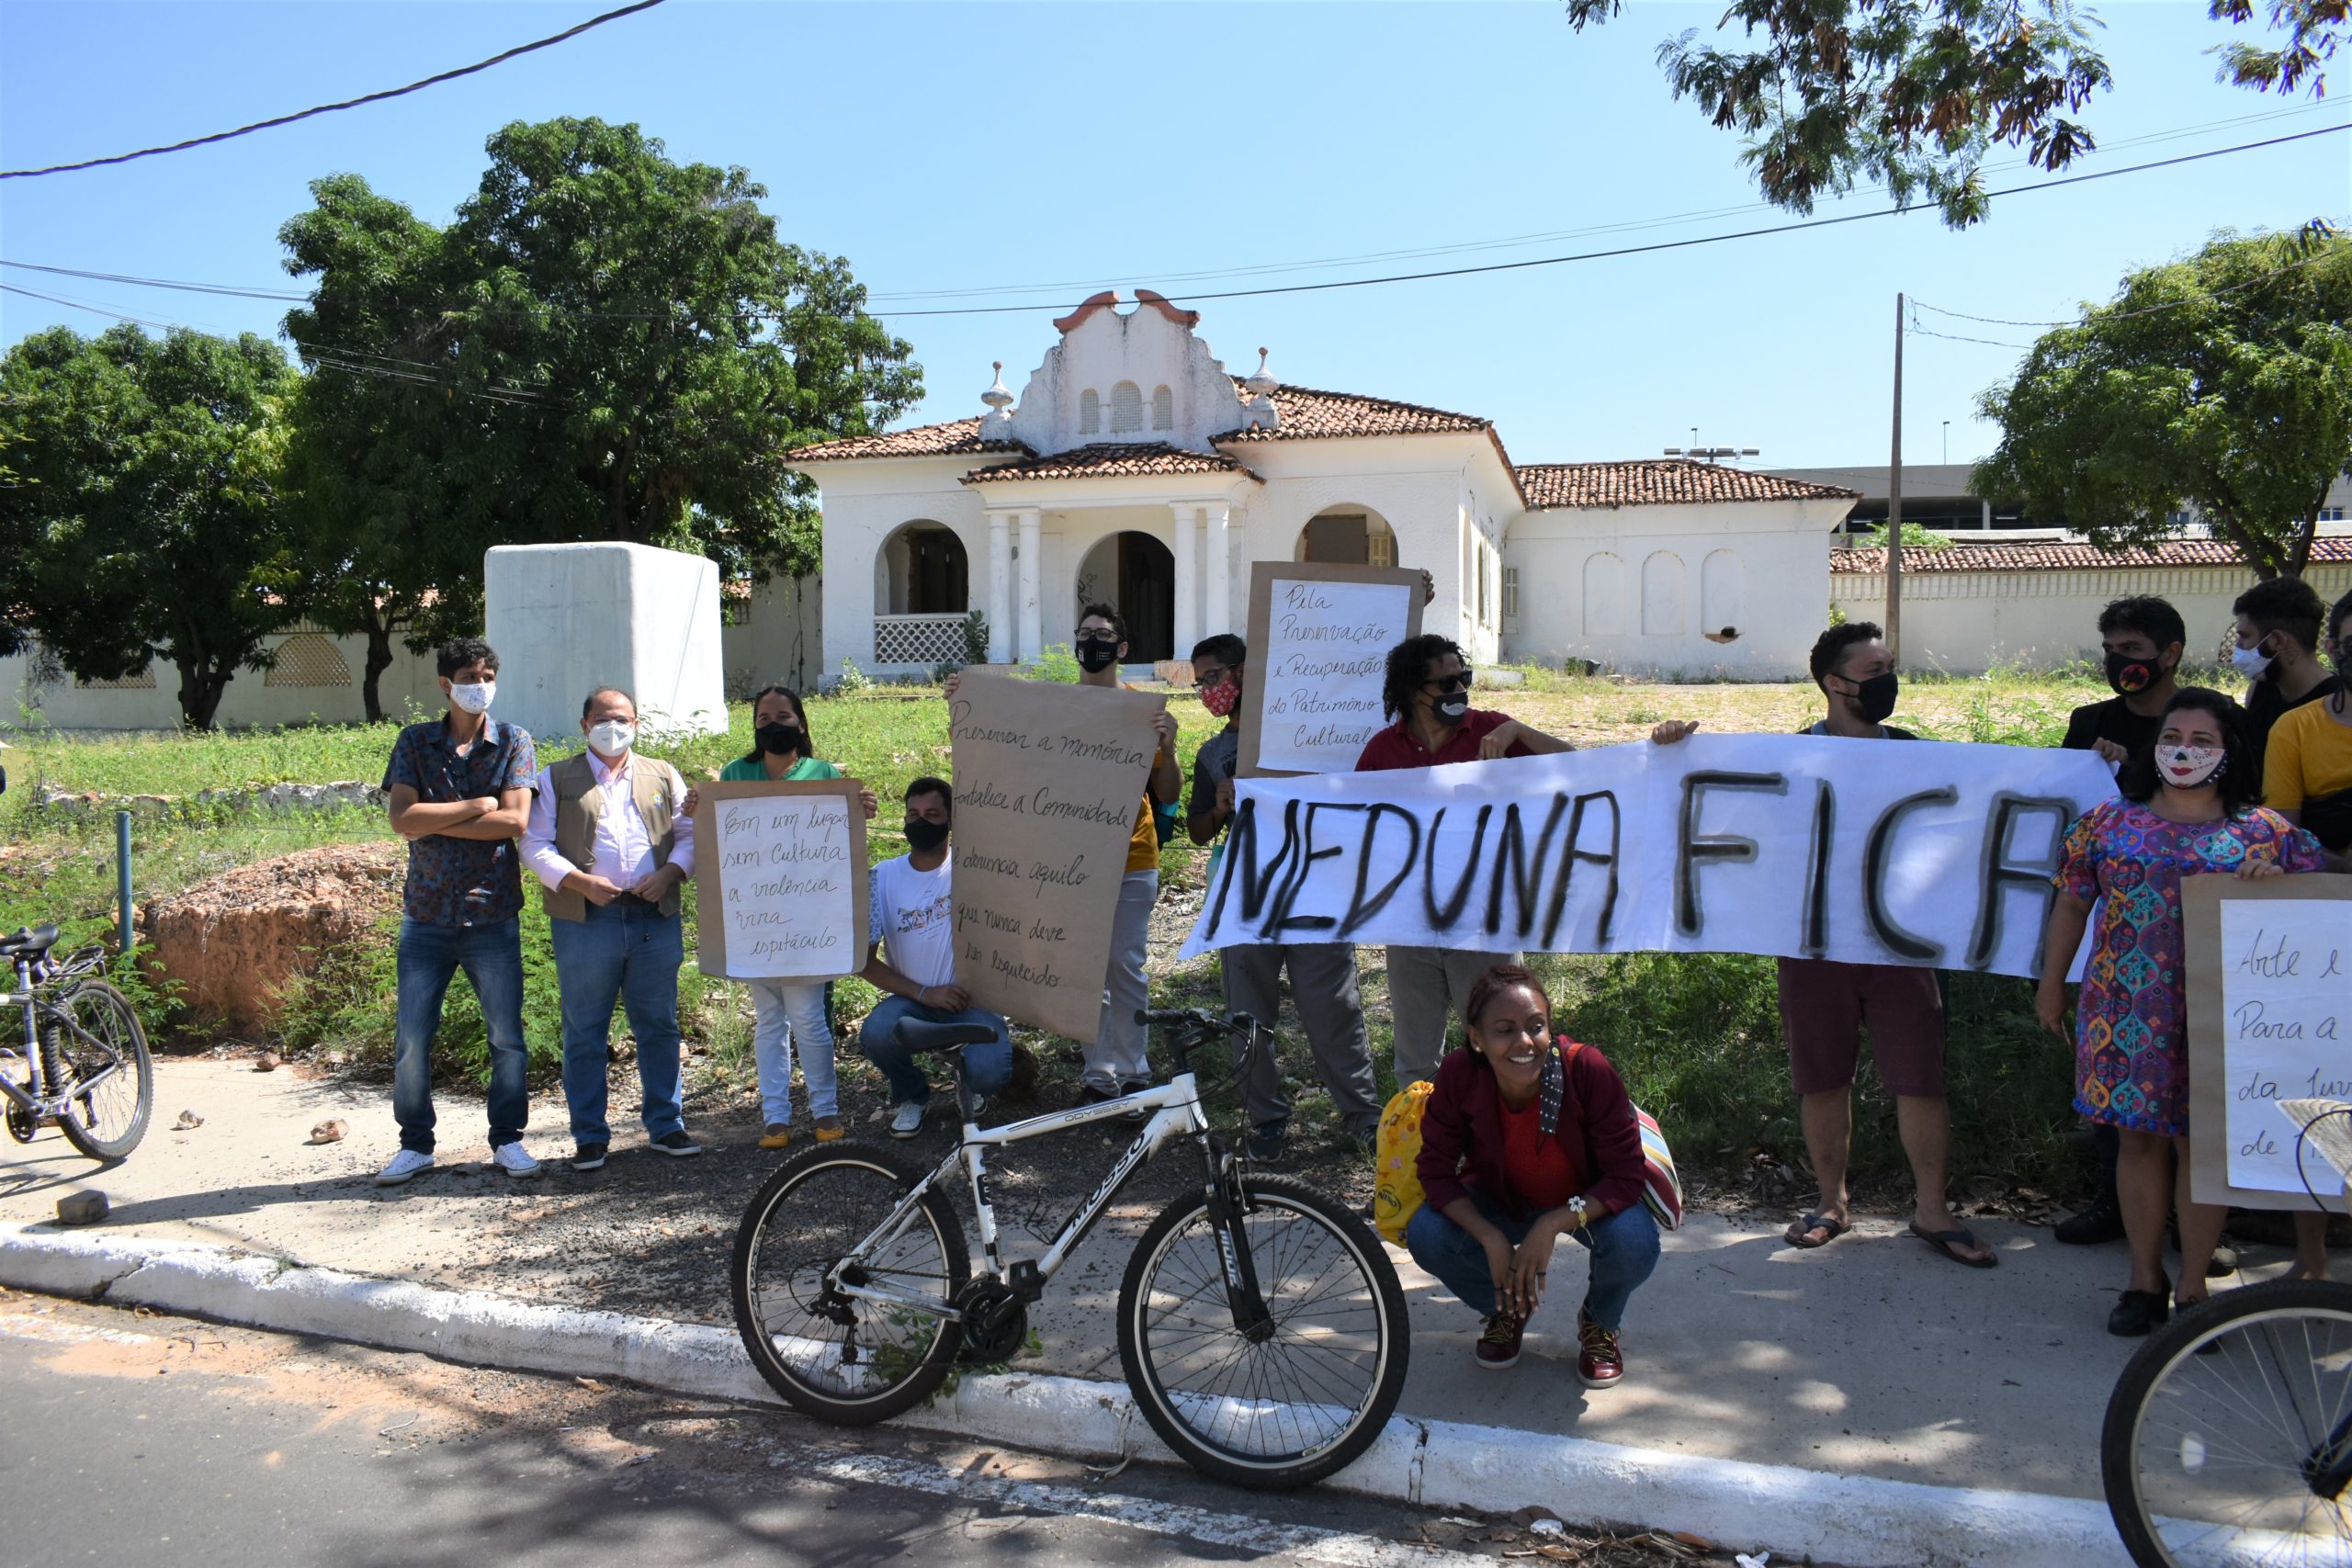 Protesto contra a demolição do Meduna